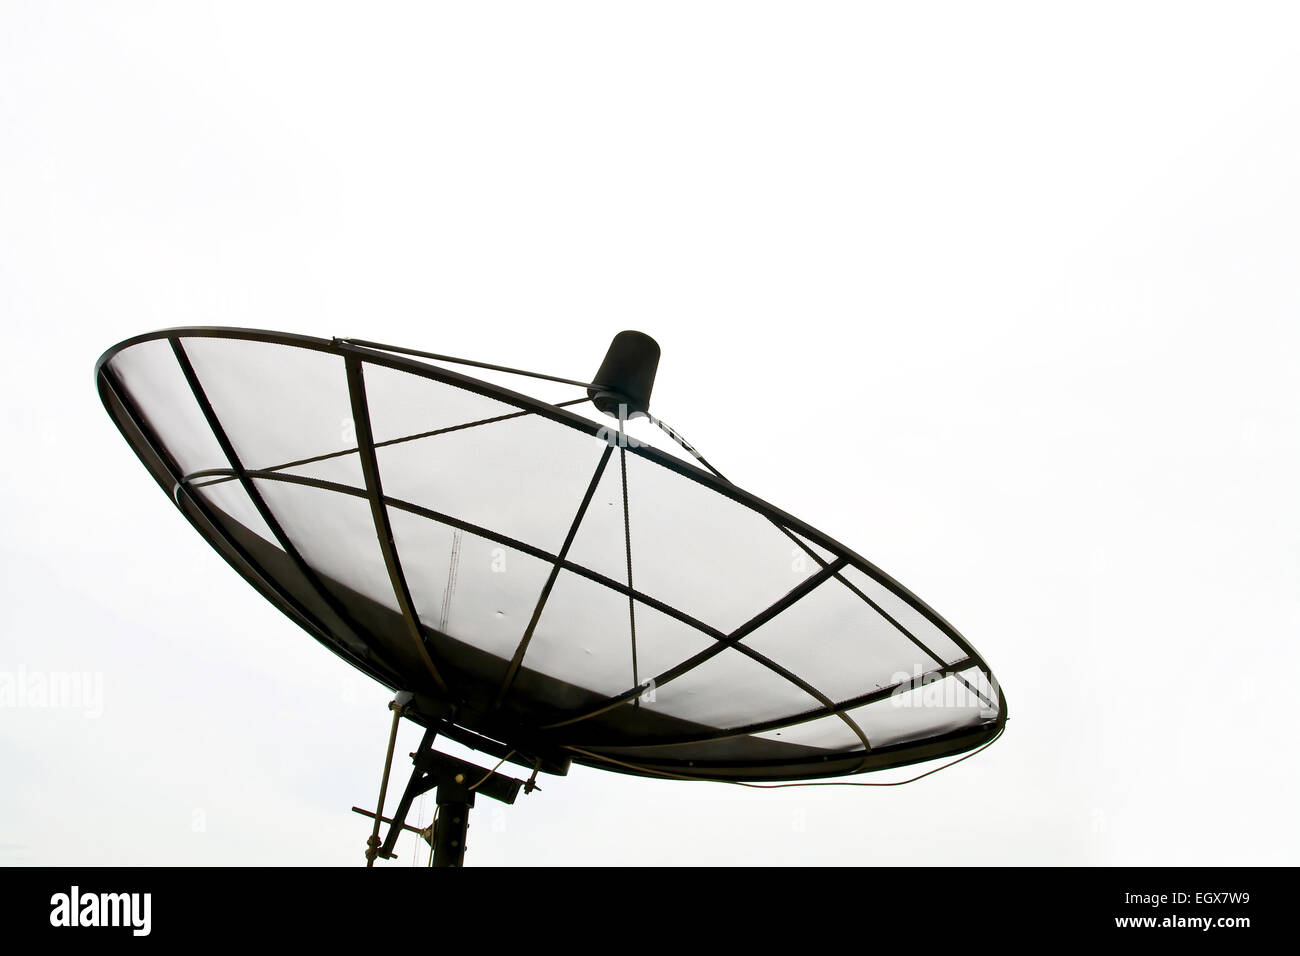 Big Black antenne satellite isolé sur ciel blanc Banque D'Images